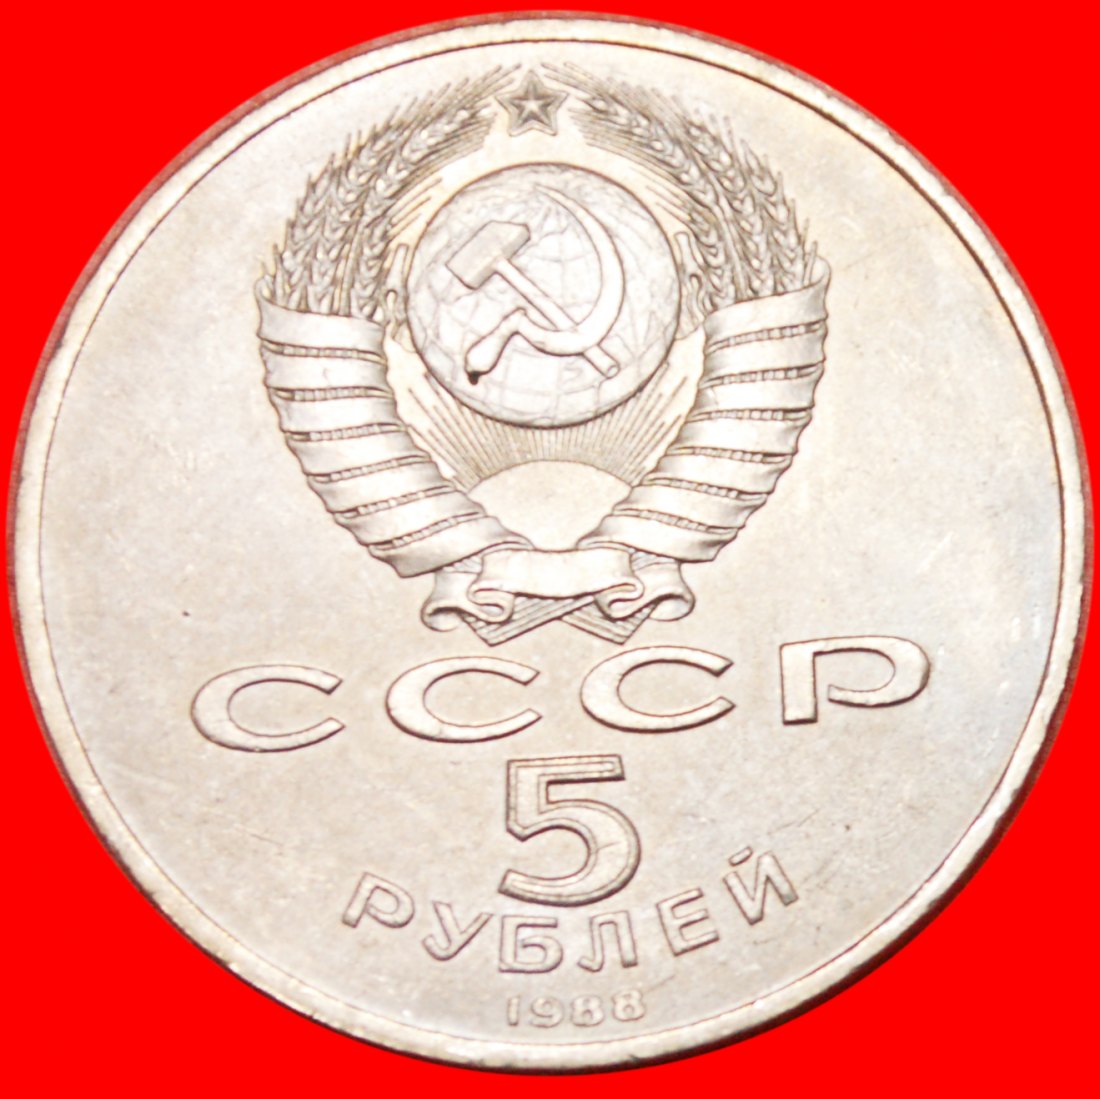  * MONOTHEISMUS - 1000 JAHRE★UdSSR (früher die russland) ★ 5 RUBEL 1988 UKRAINE STG★OHNE VORBEHALT!   